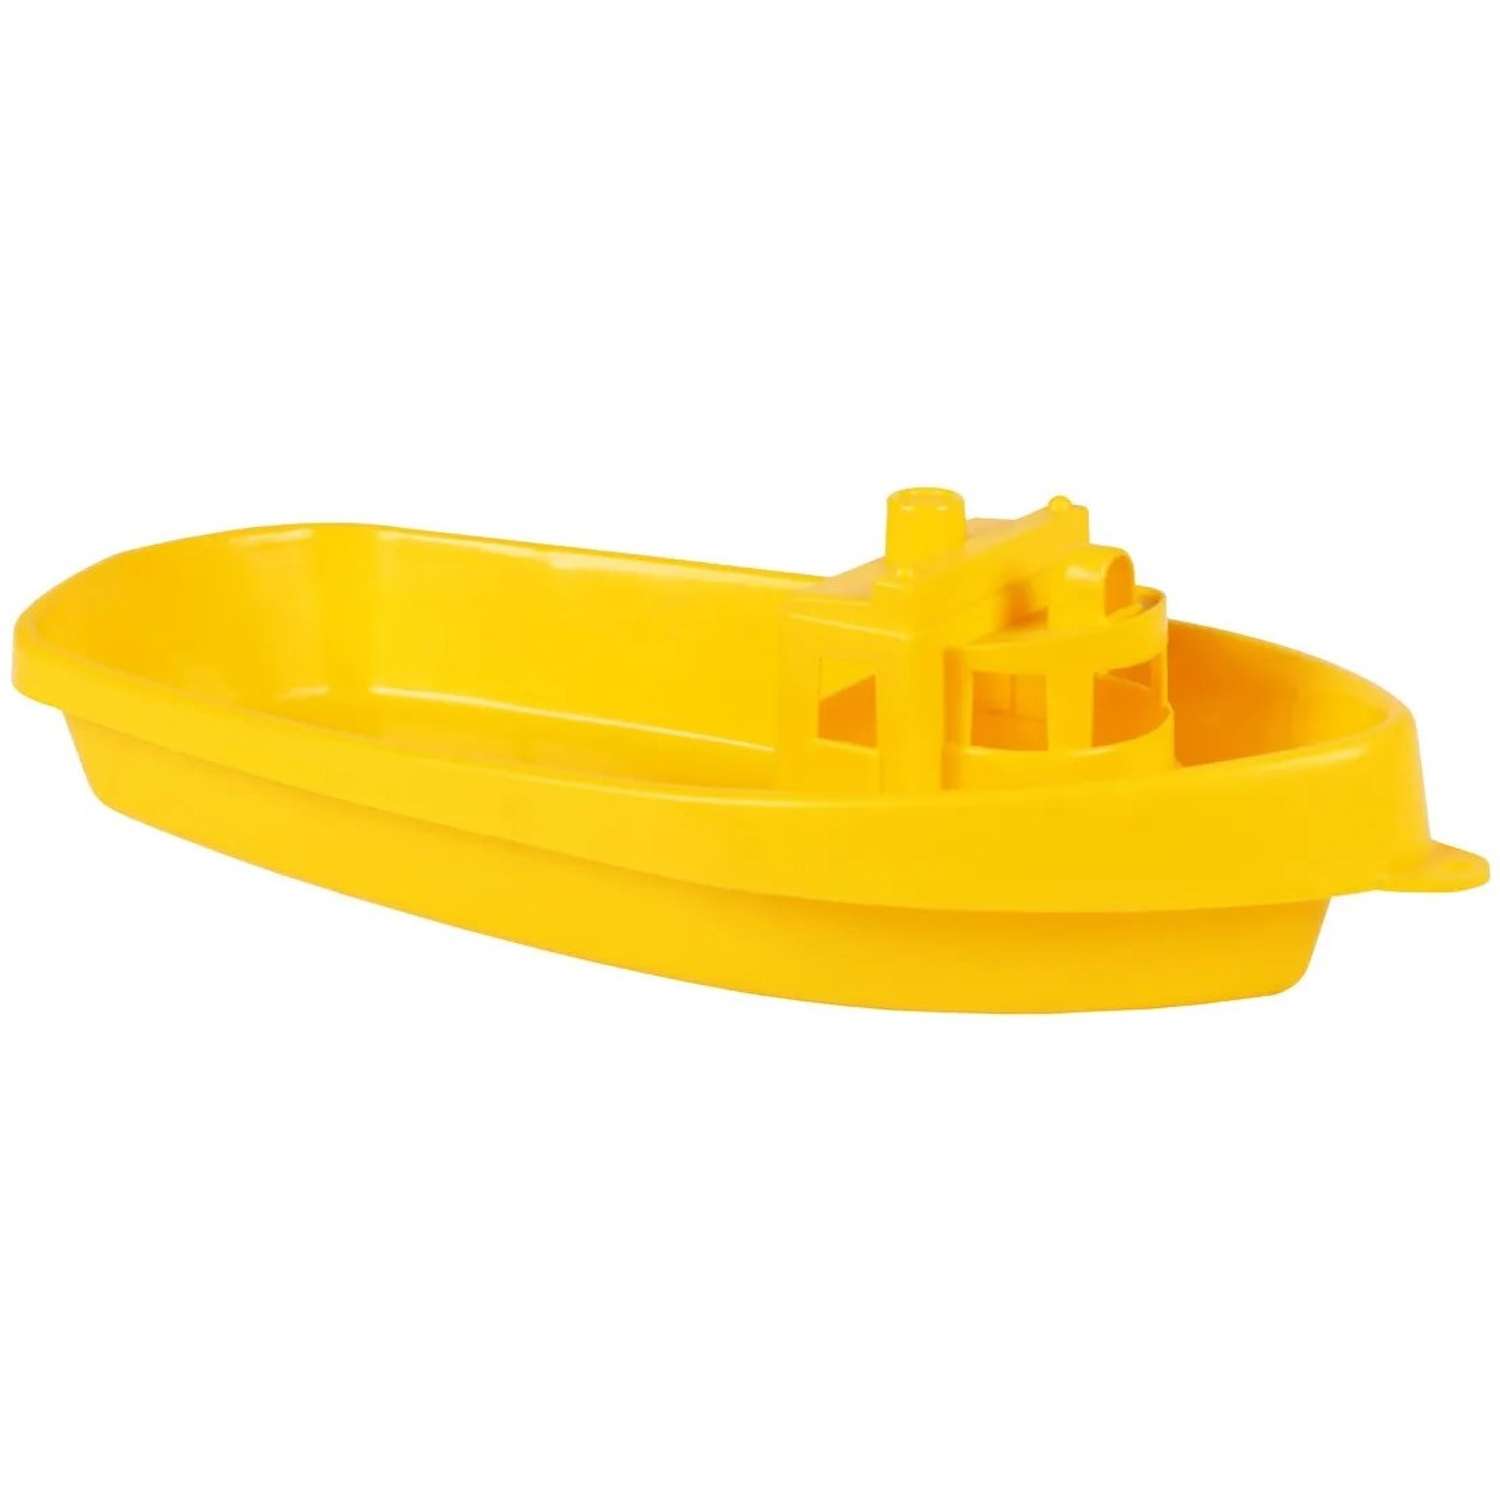 Игрушка для ванной Технок Кораблик пластмассовый желтый - фото 1